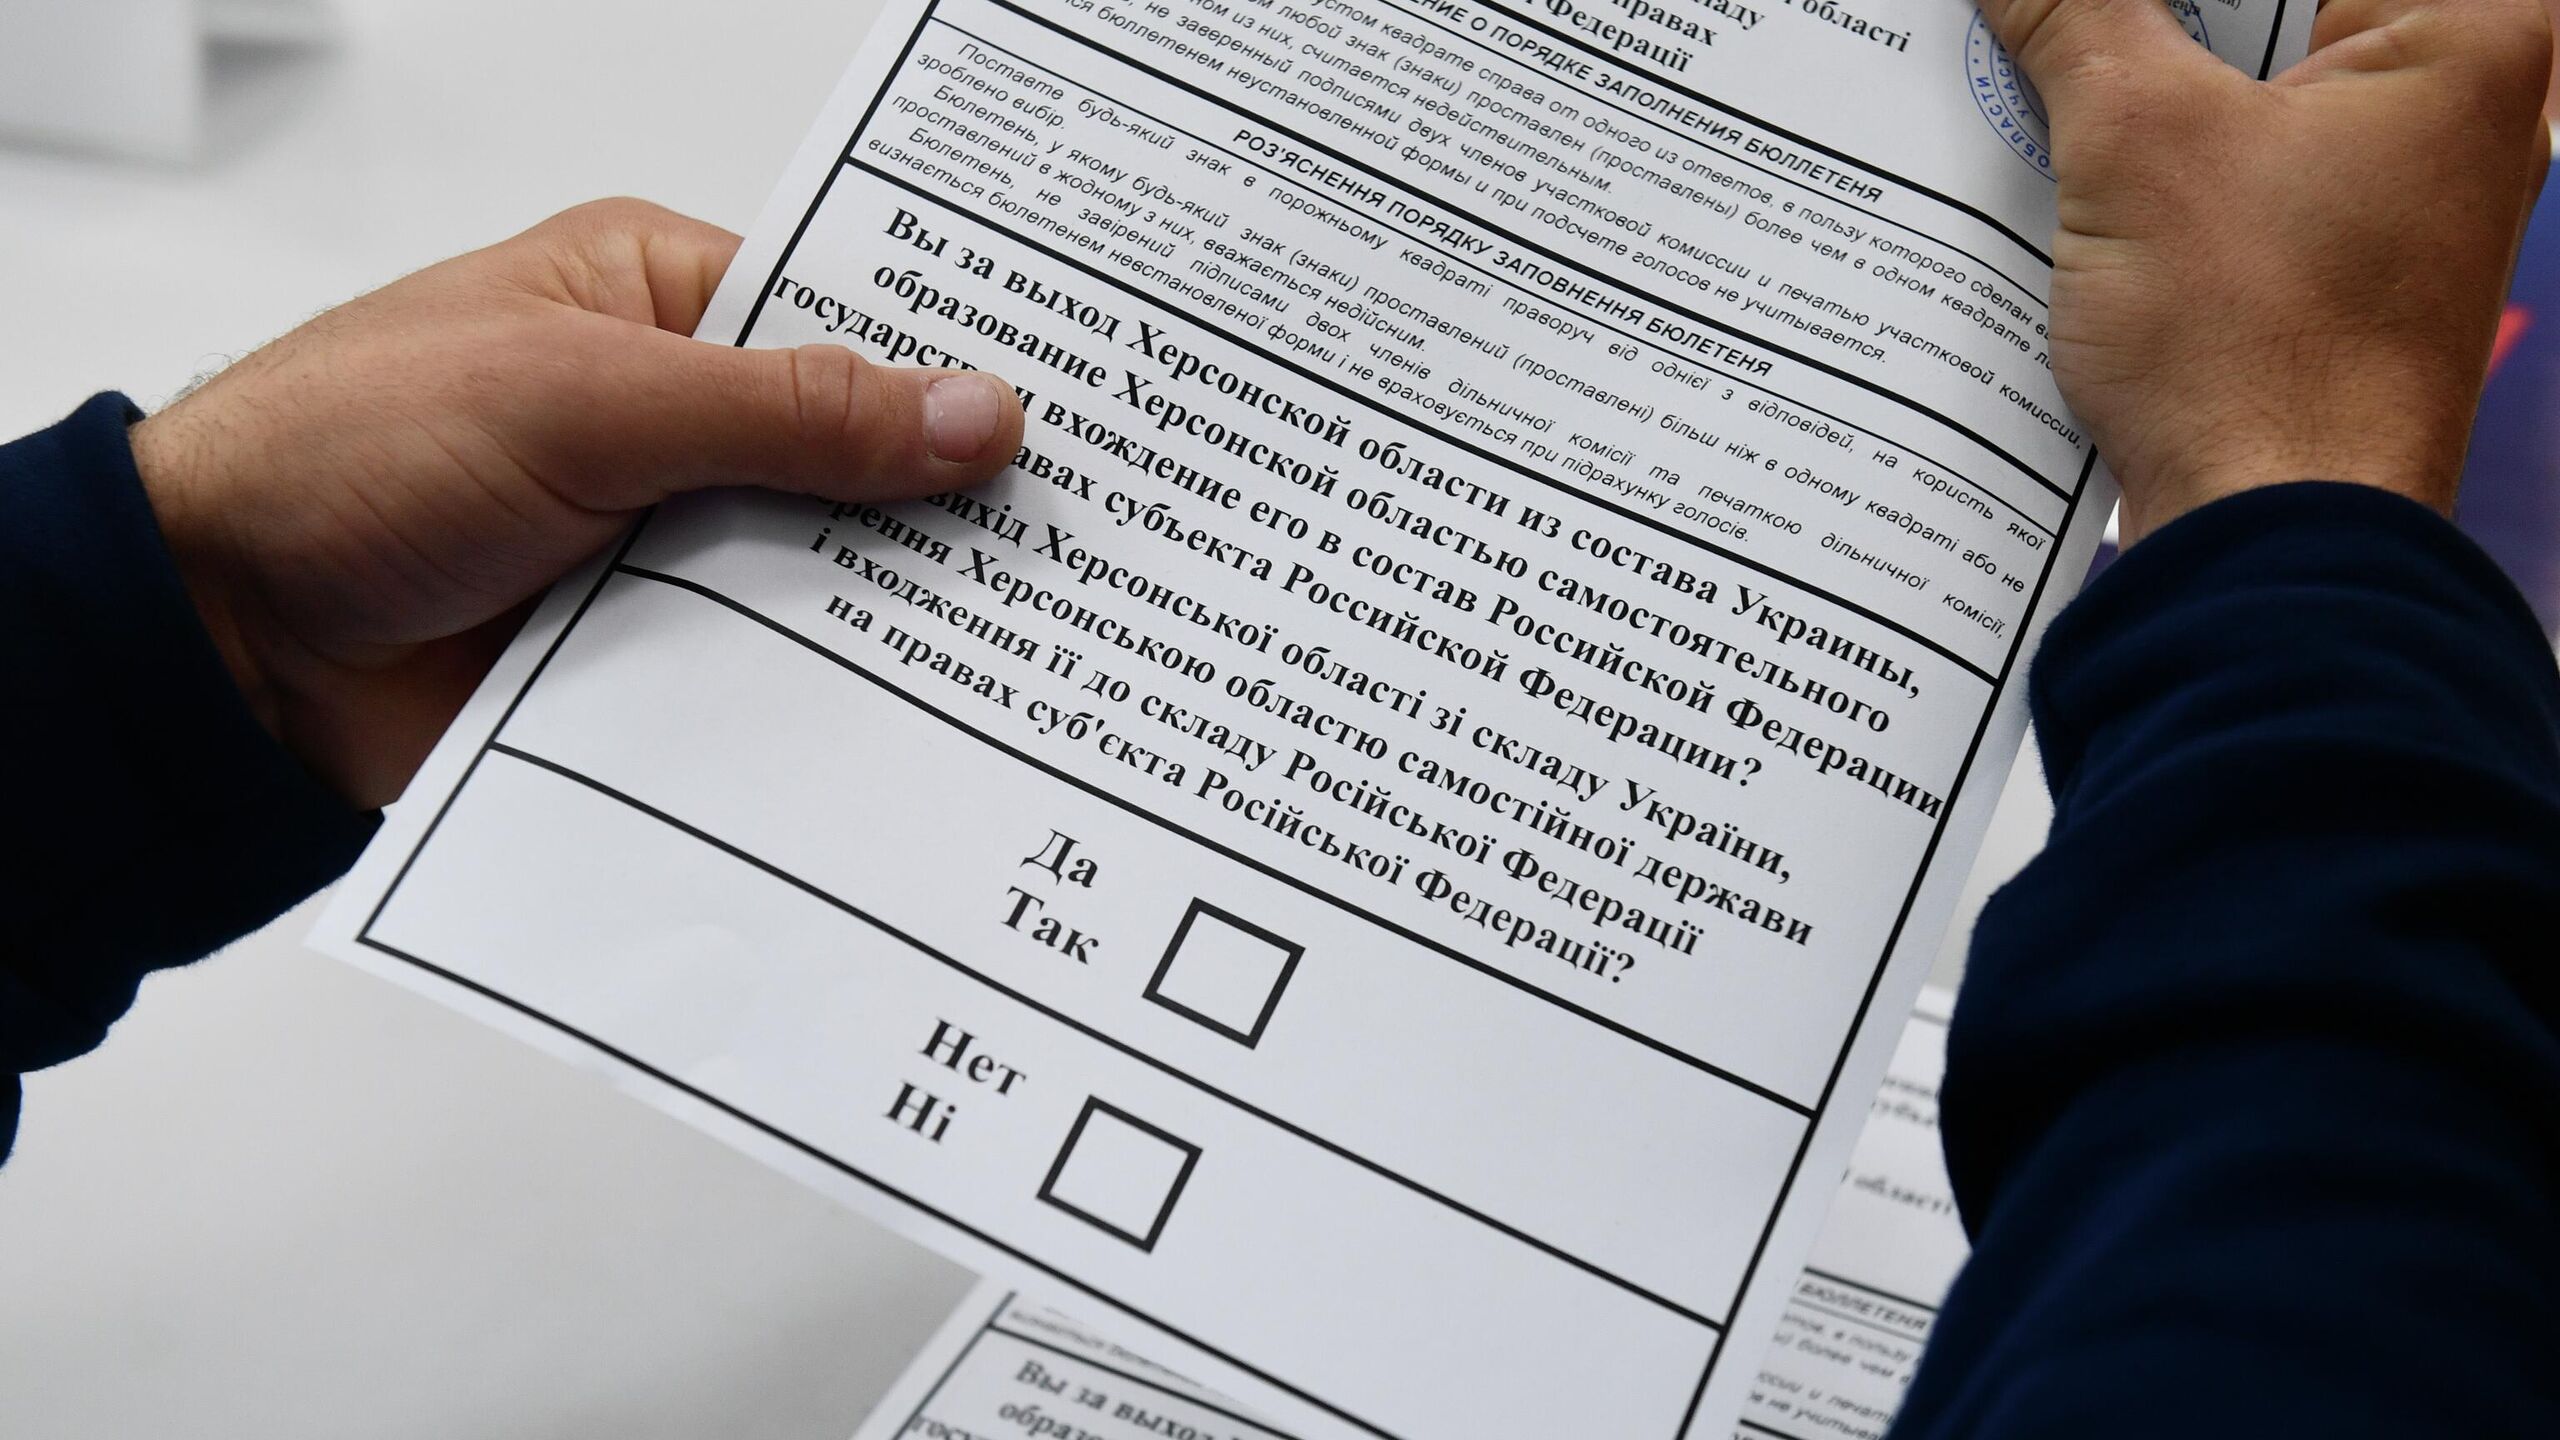 EP berbicara tentang jumlah pemilih yang tinggi dalam referendum di wilayah Kherson